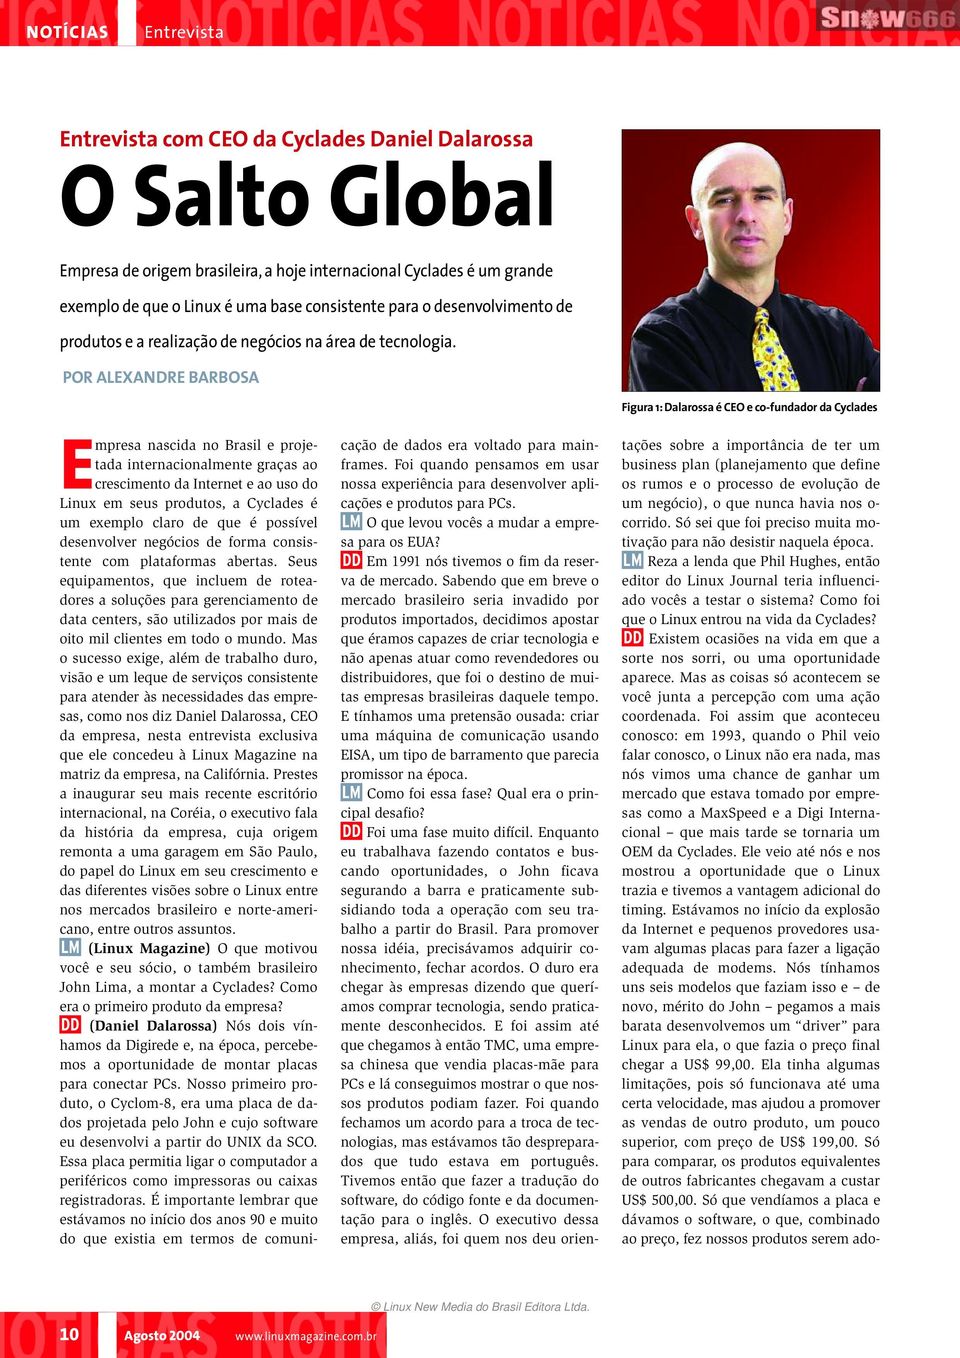 POR ALEXANDRE BARBOSA Figura 1: Dalarossa é CEO e co-fundador da Cyclades Empresa nascida no Brasil e projetada internacionalmente graças ao crescimento da Internet e ao uso do Linux em seus